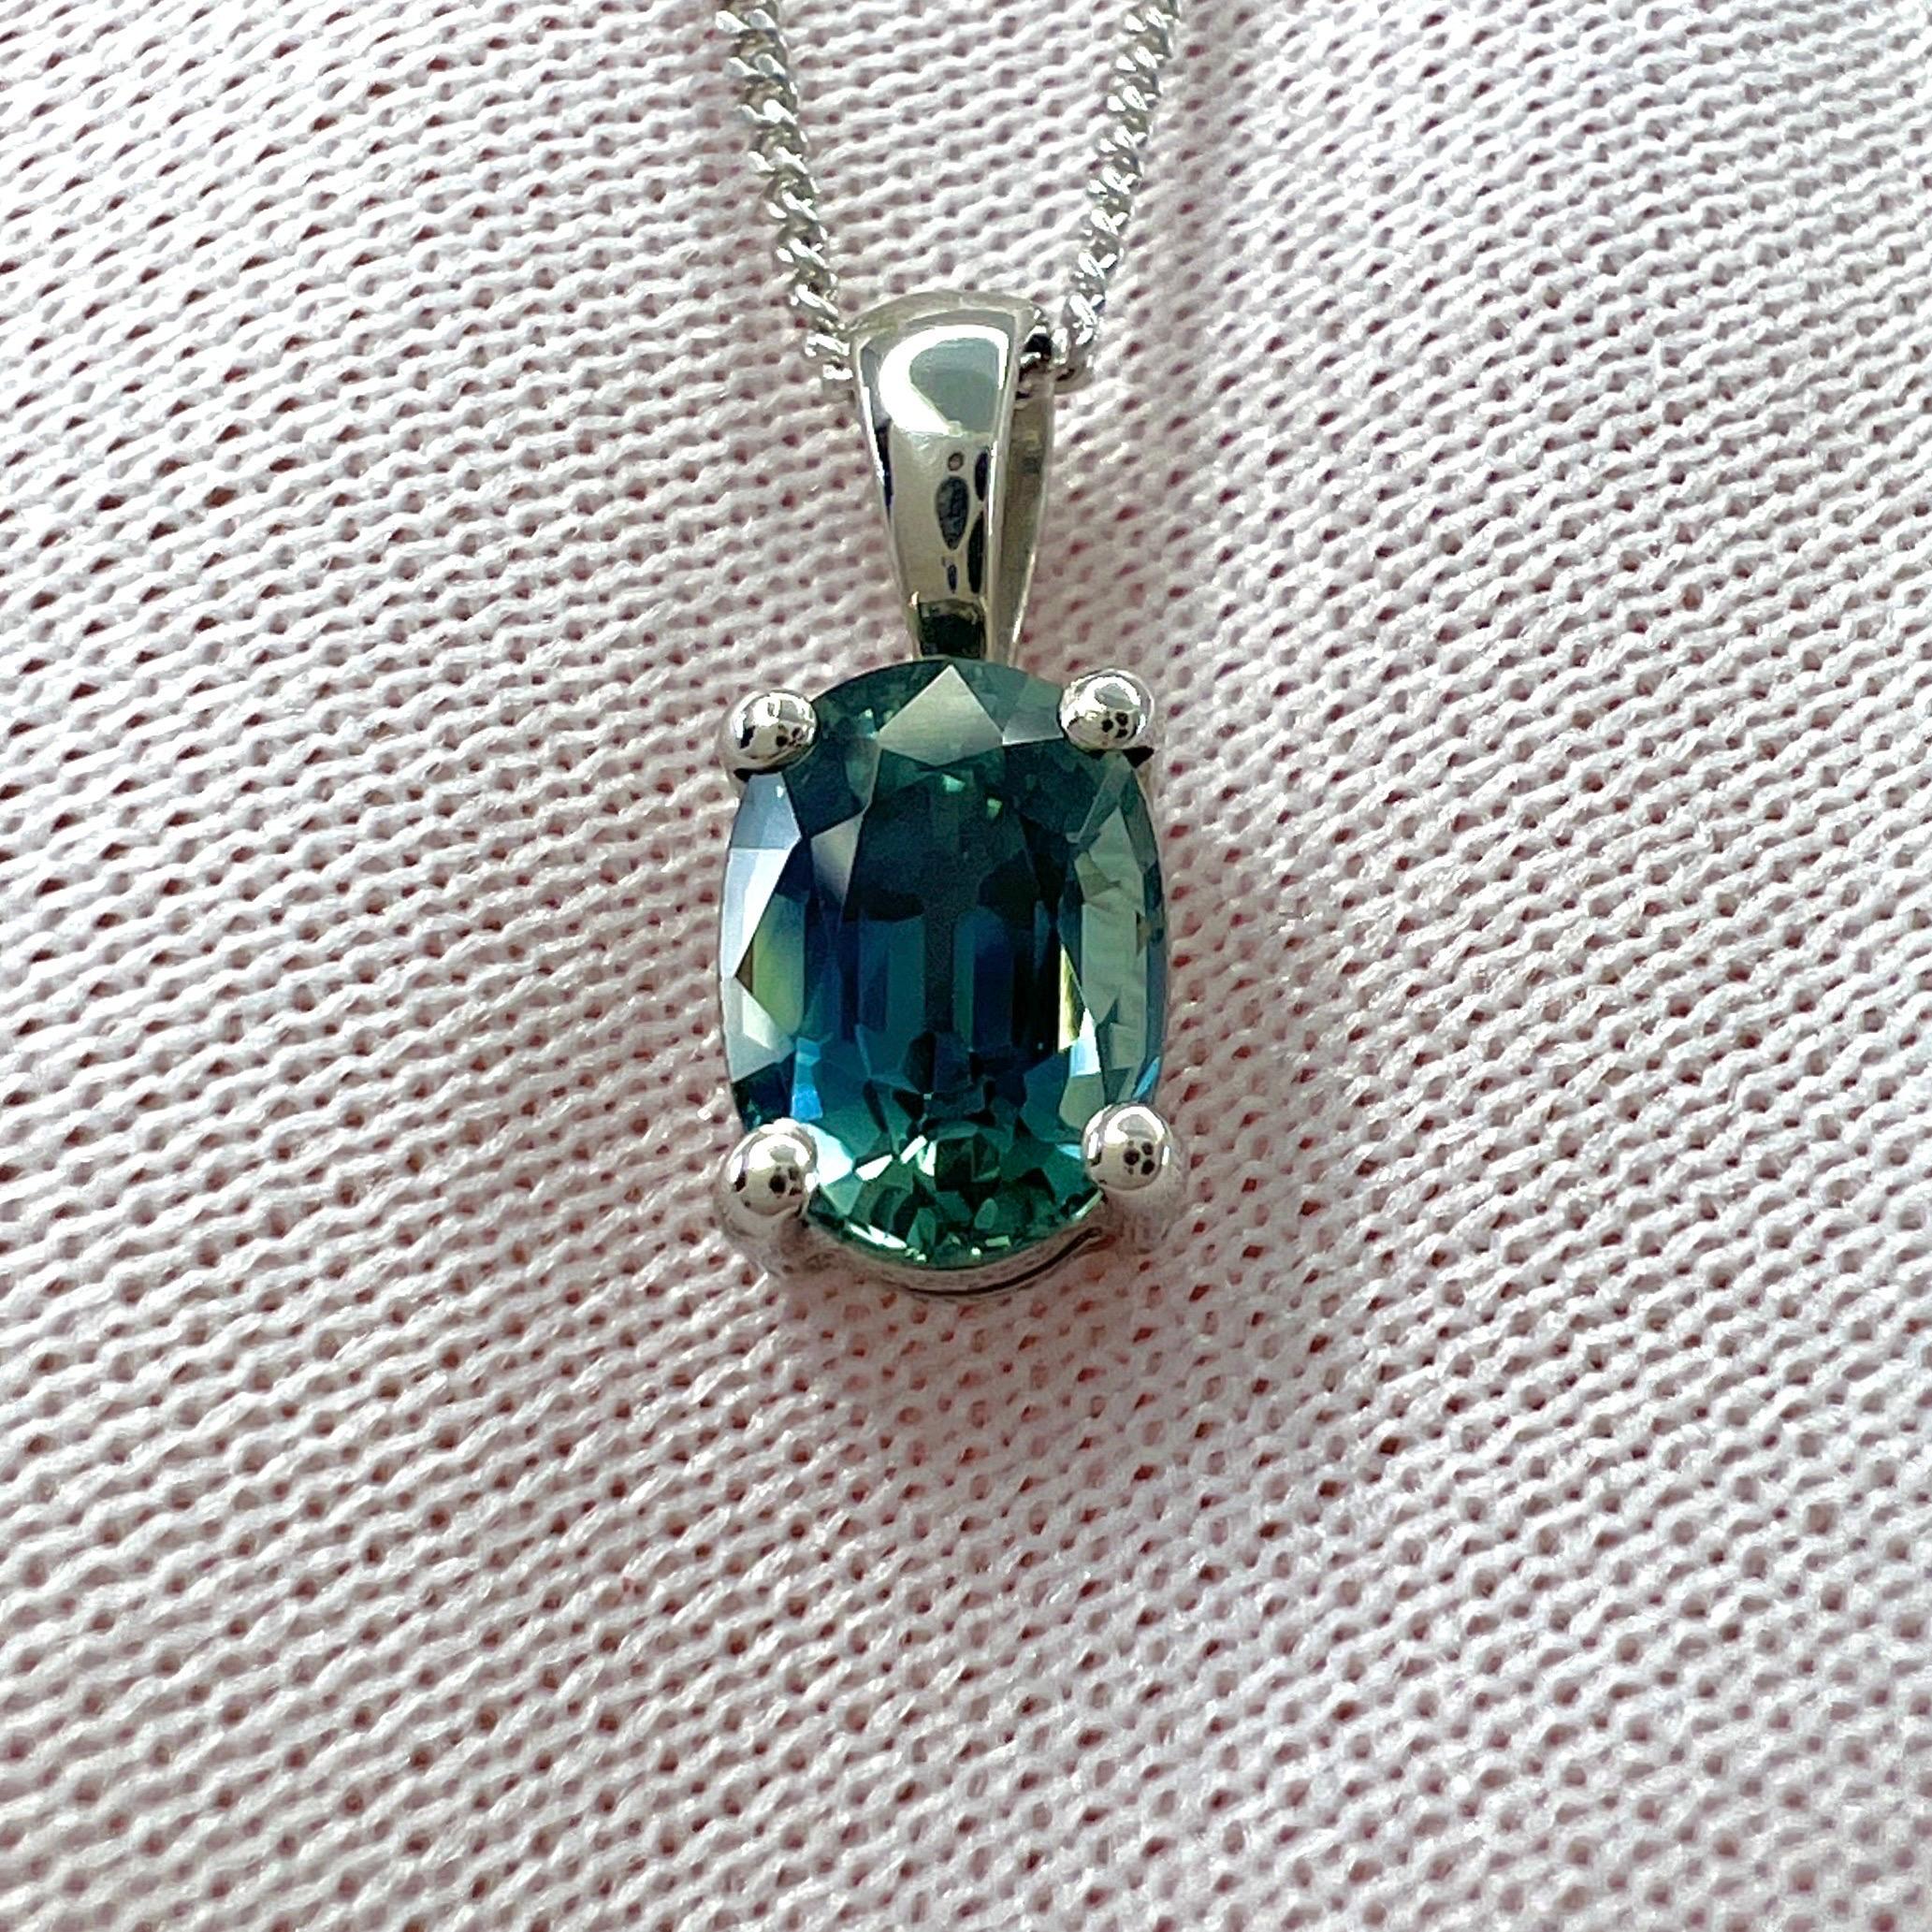 Collier à pendentifs en platine, saphir vert, bleu sarcelle profond et naturel.

Saphir de 1,37 carat d'une belle couleur bleu-vert profond 